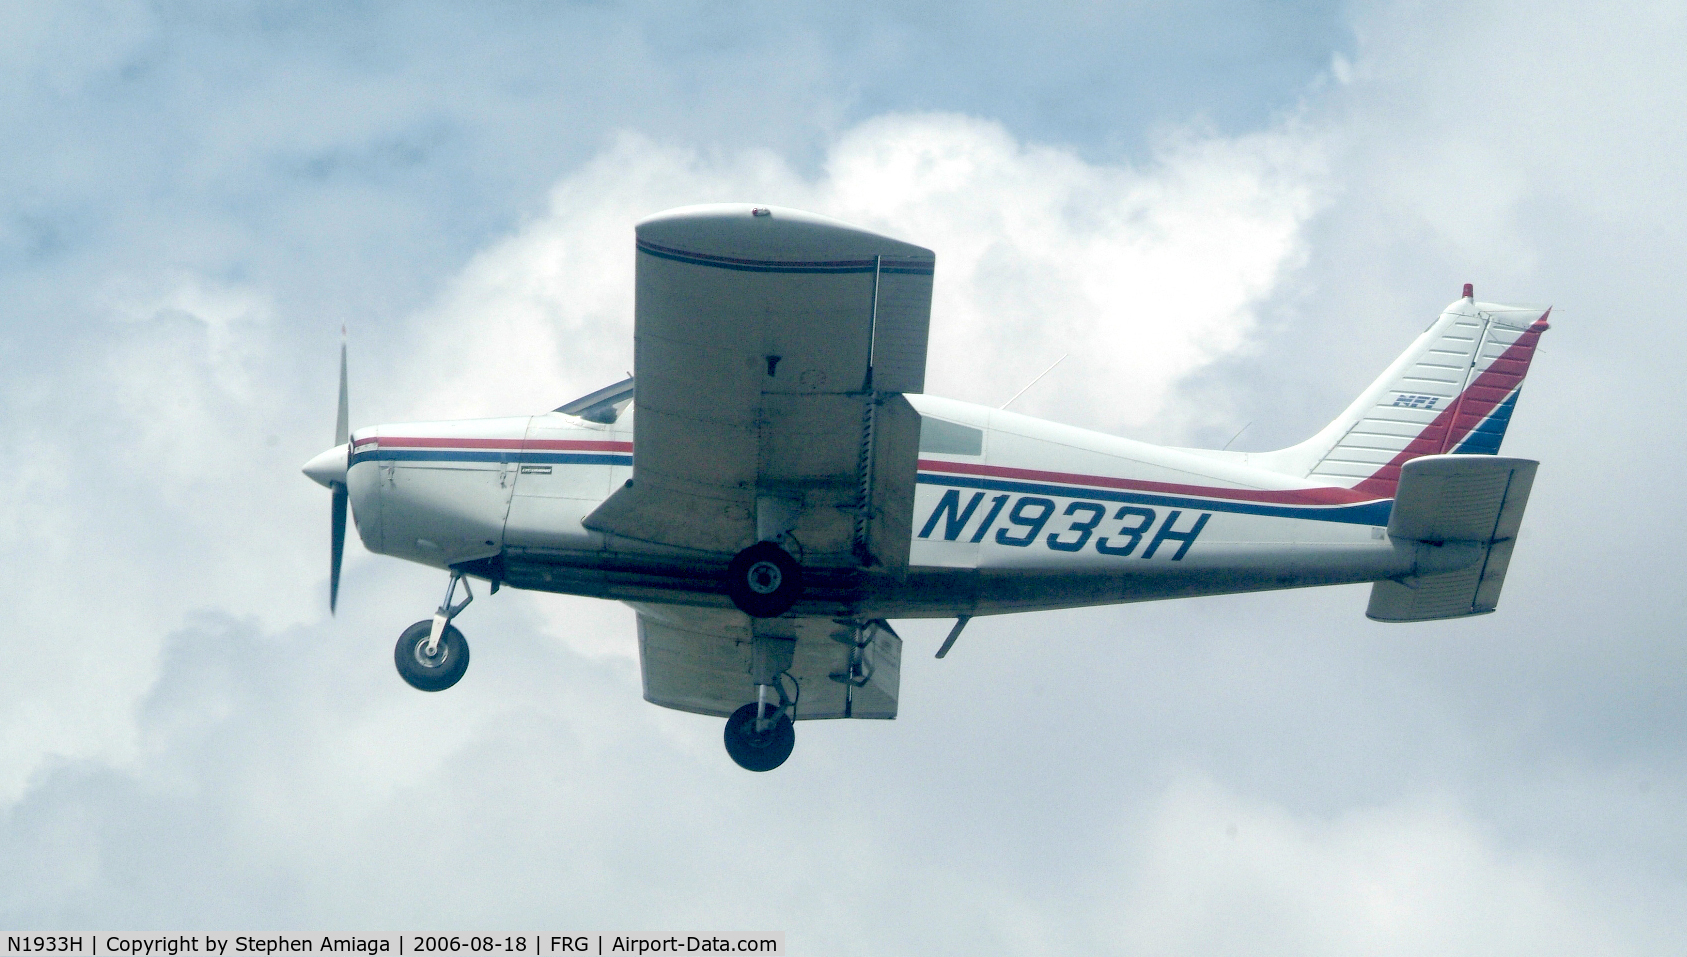 N1933H, 1977 Piper PA-28-140 Cherokee C/N 28-7725170, 33H, short final 19.